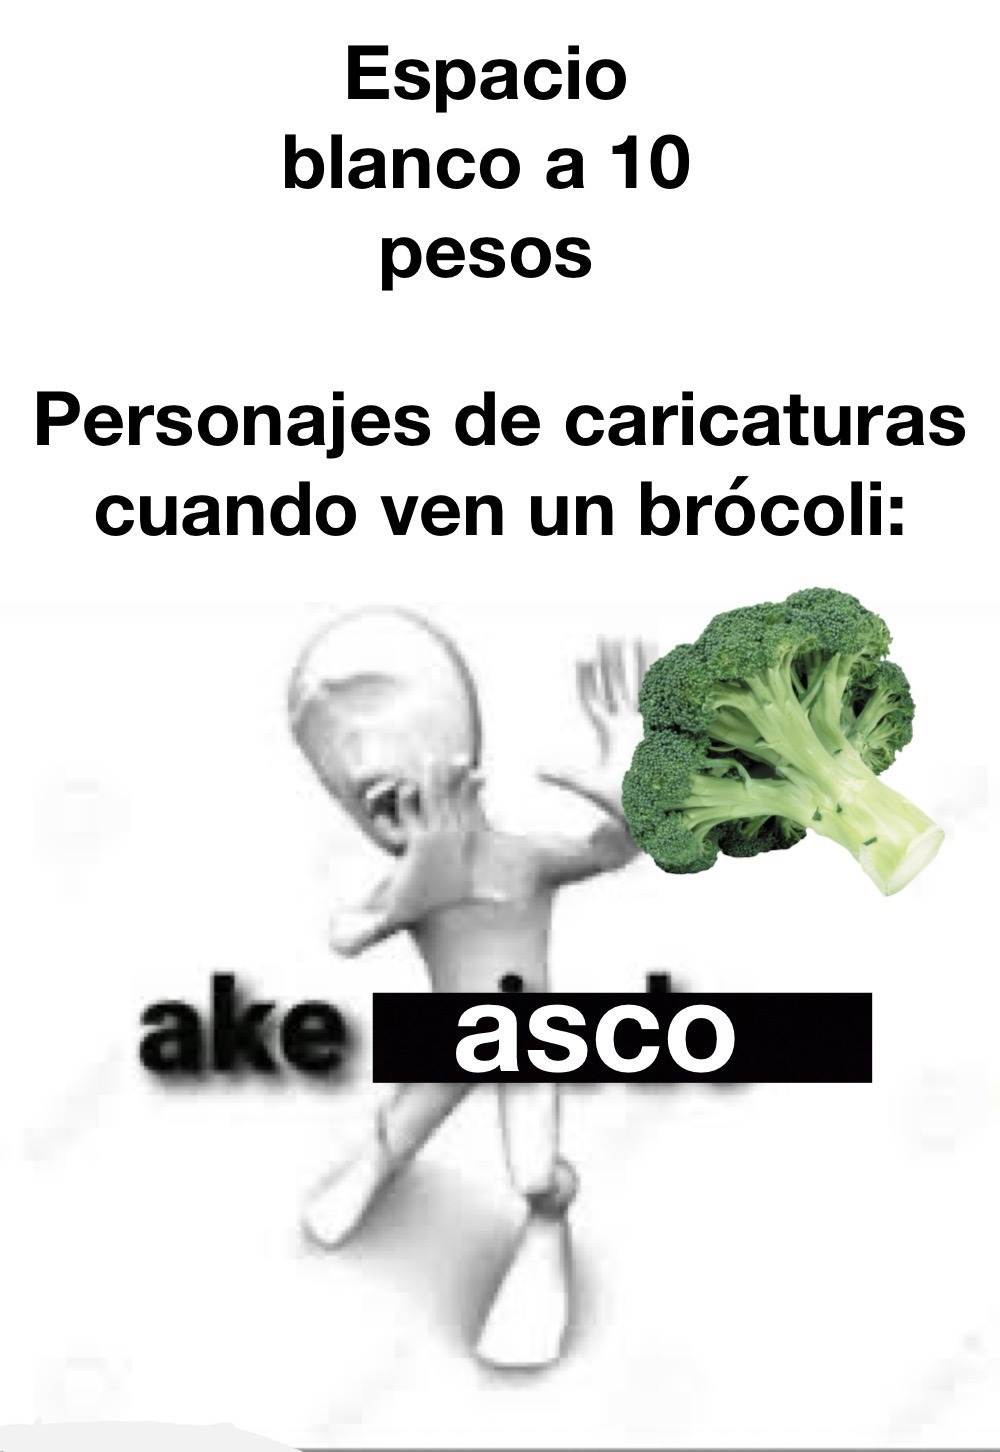 La verdad el brócoli no sabe tan mal - meme